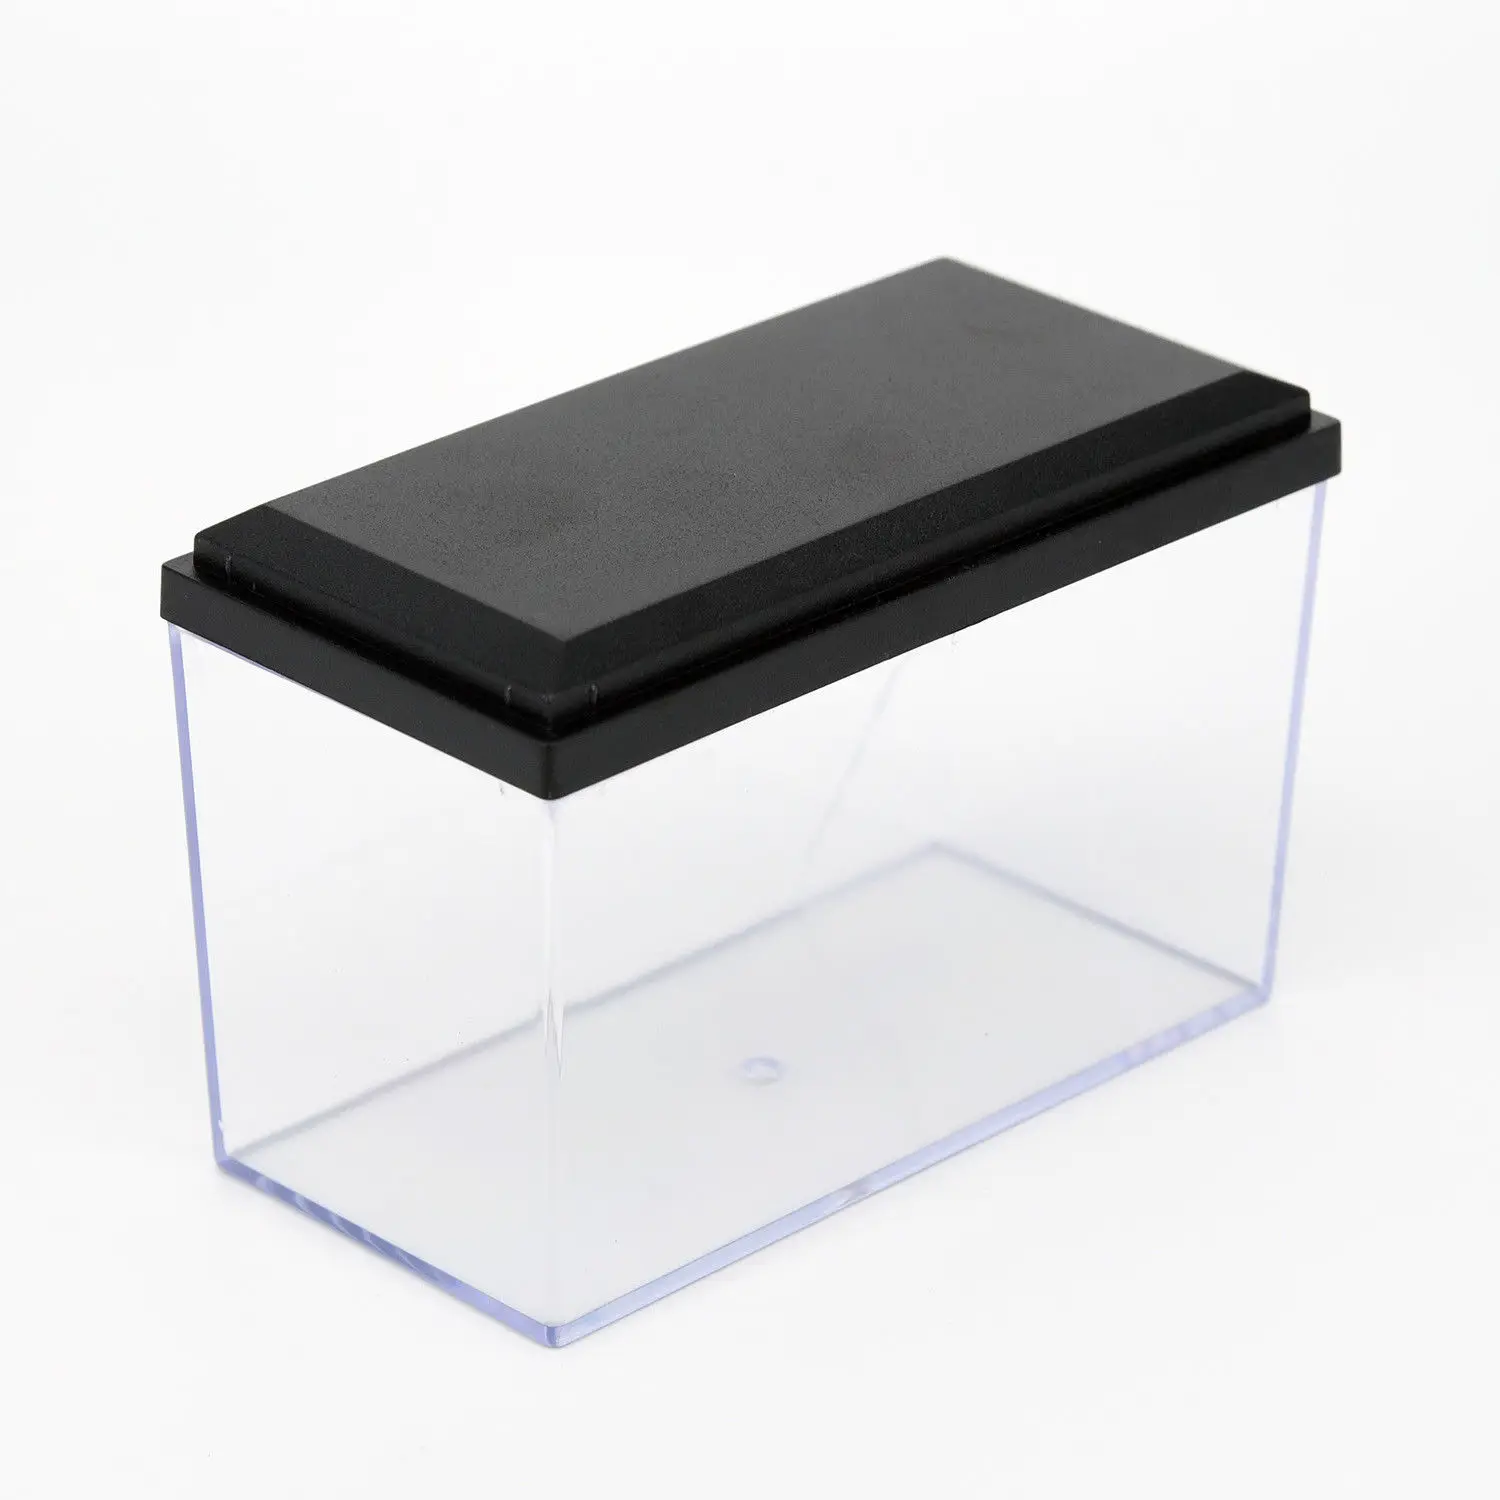 AU акриловая коробка дисплея Perspex чехол самосборки пластиковое основание Пылезащитный 10x5x6